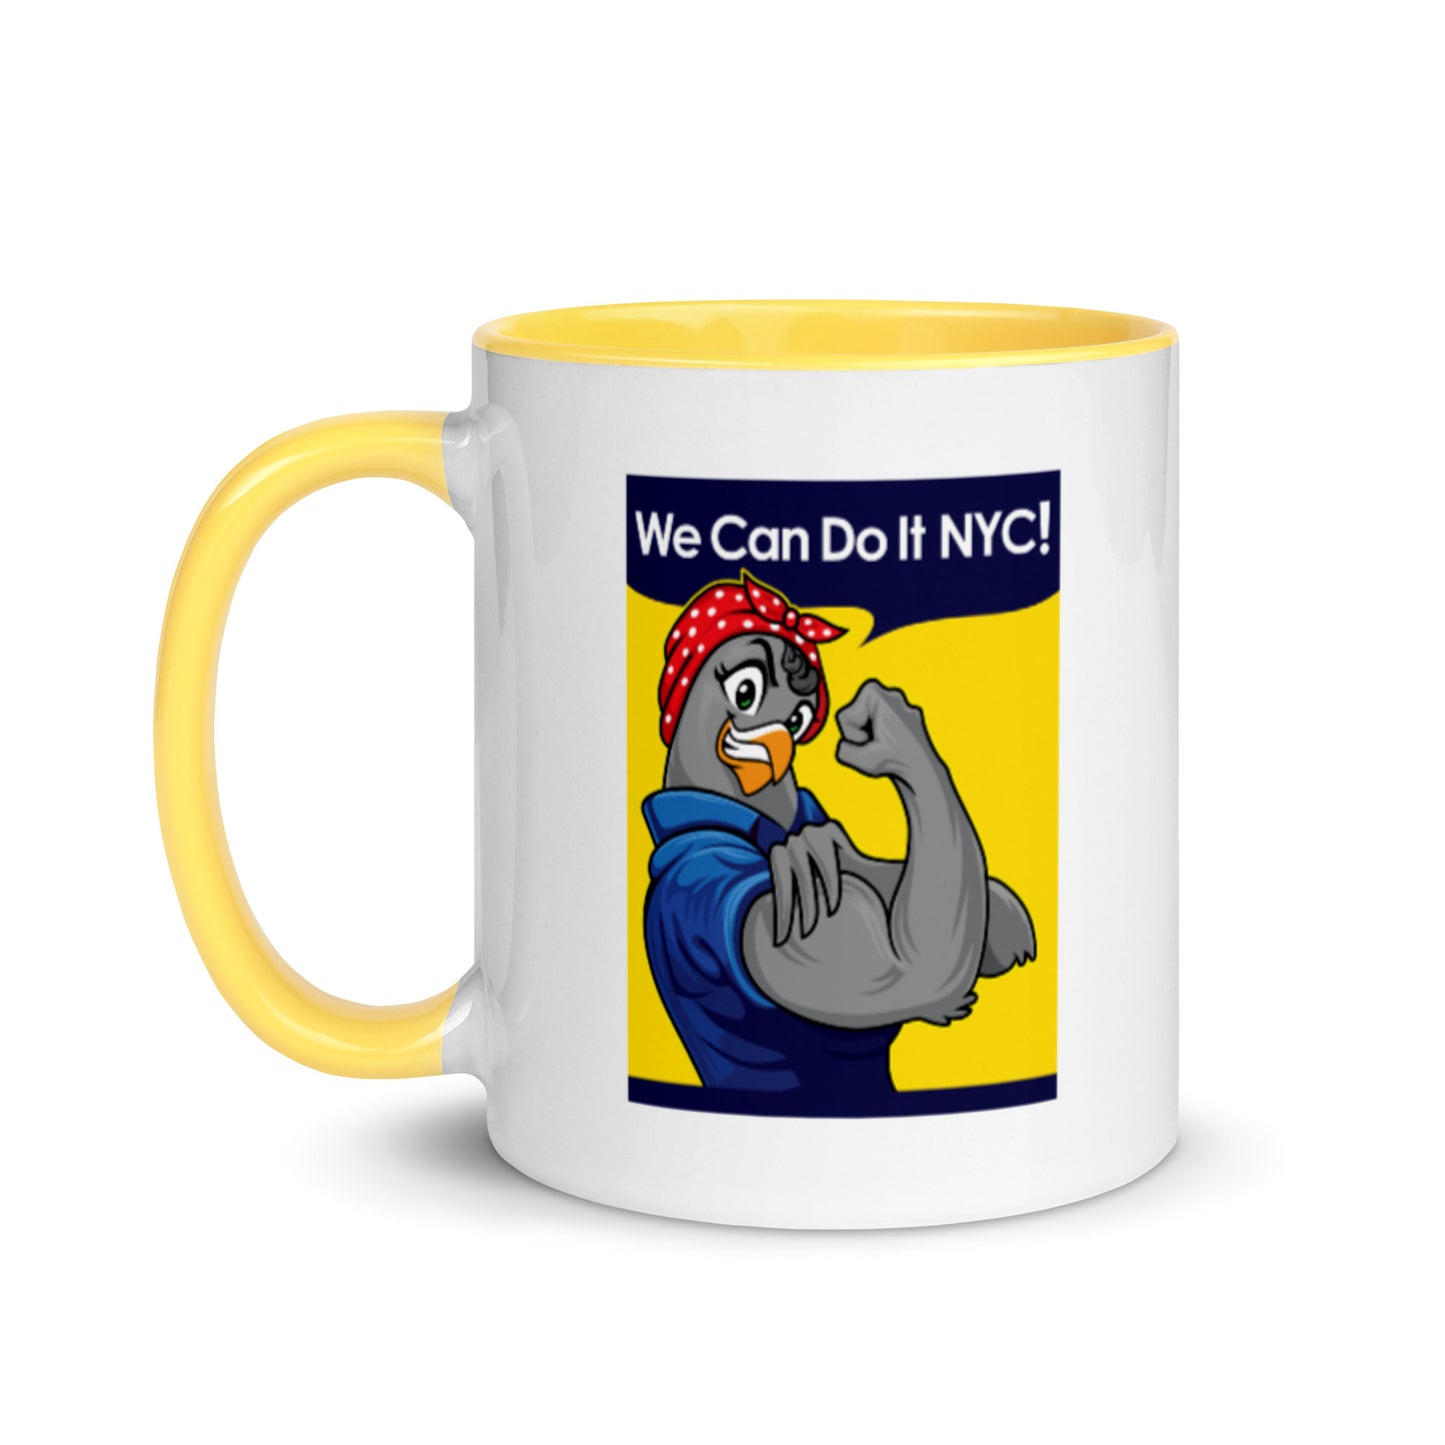 We Can Do it NYC! / Coffee Mug